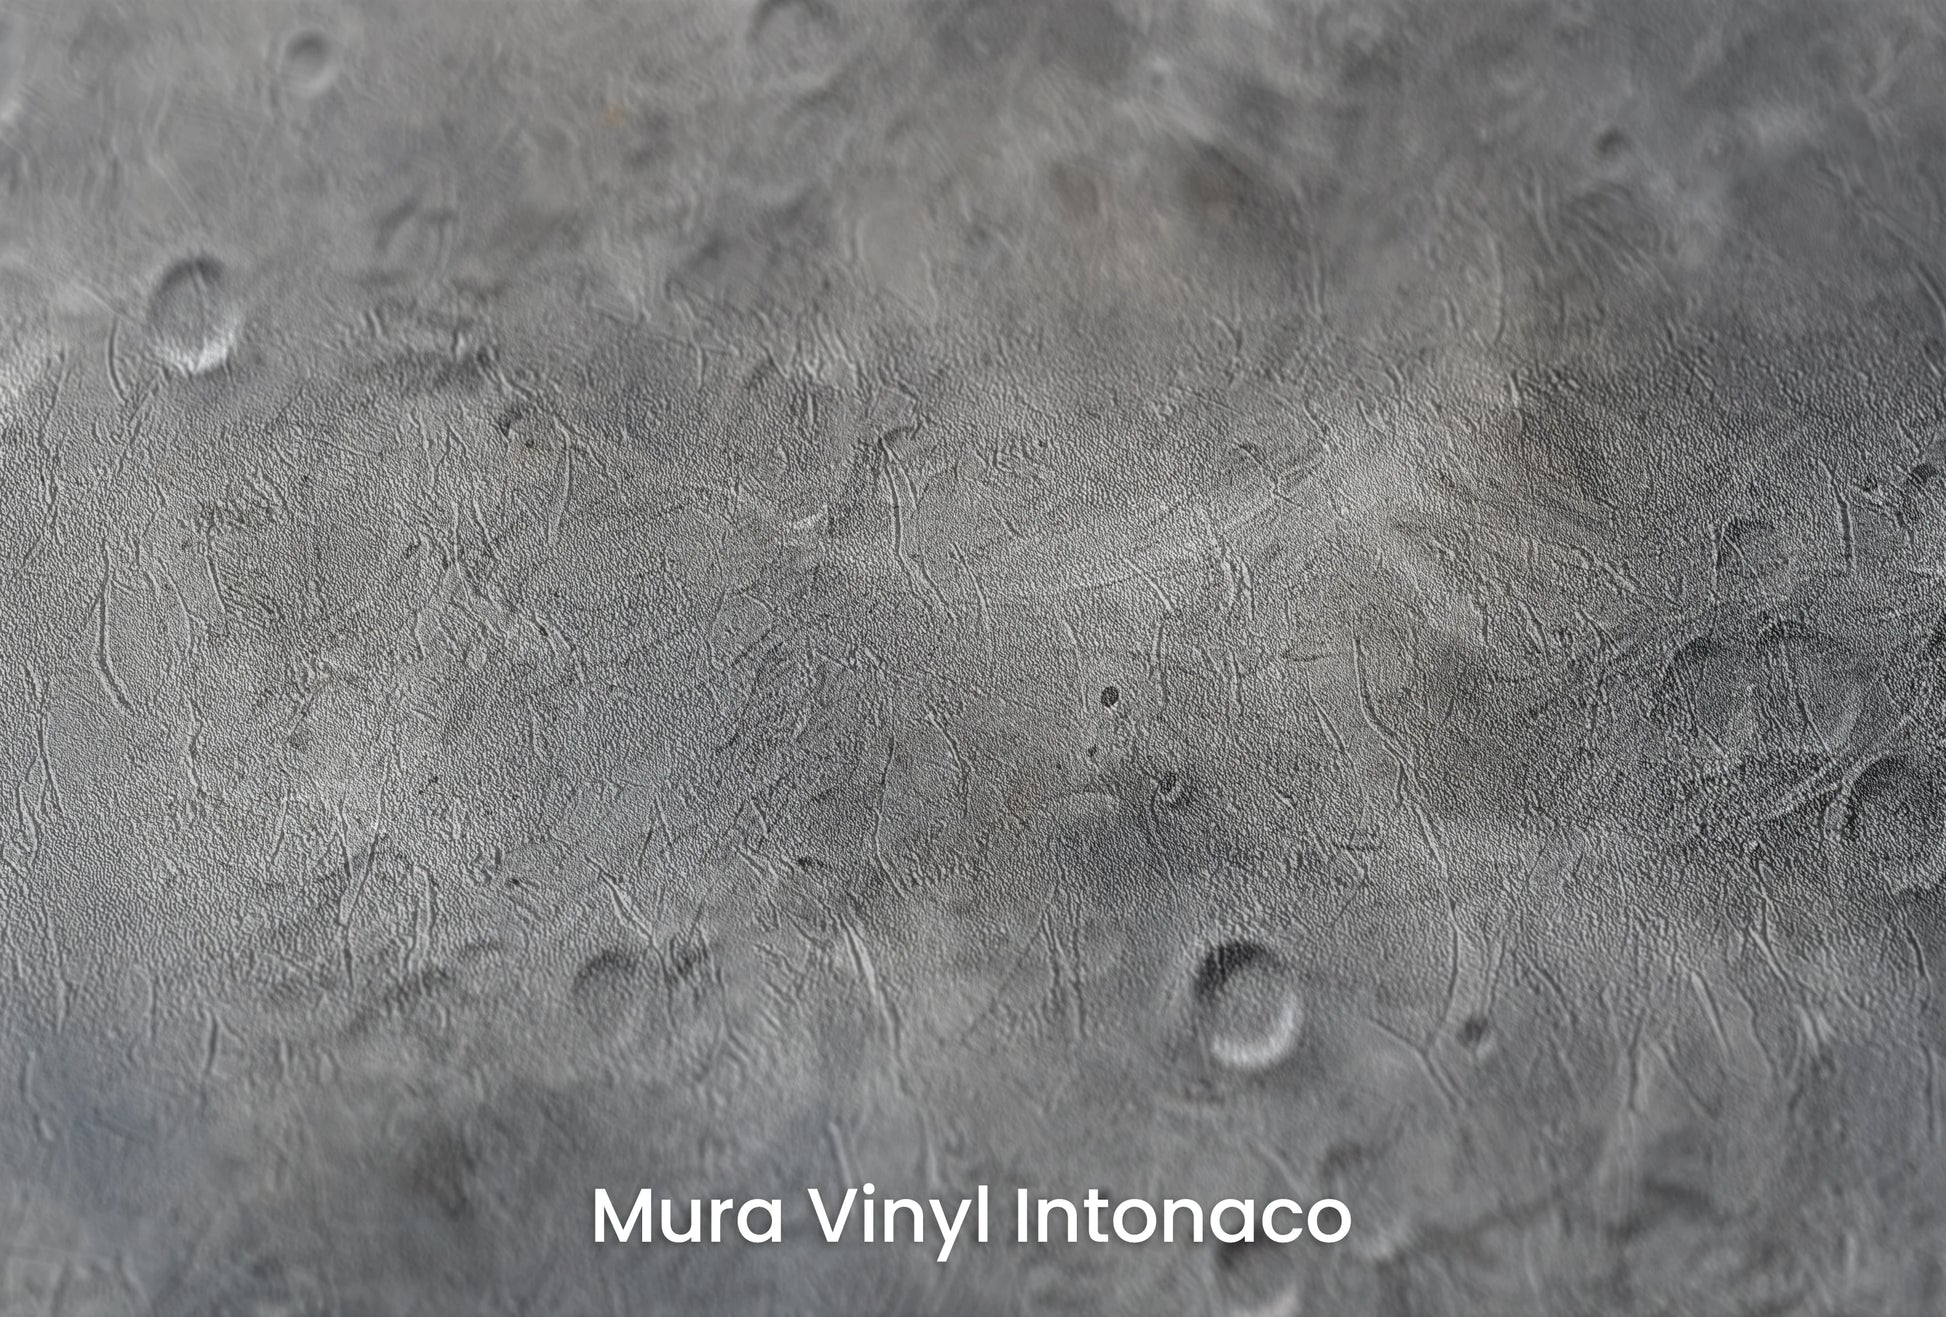 Zbliżenie na artystyczną fototapetę o nazwie Solar Winds na podłożu Mura Vinyl Intonaco - struktura tartego tynku.